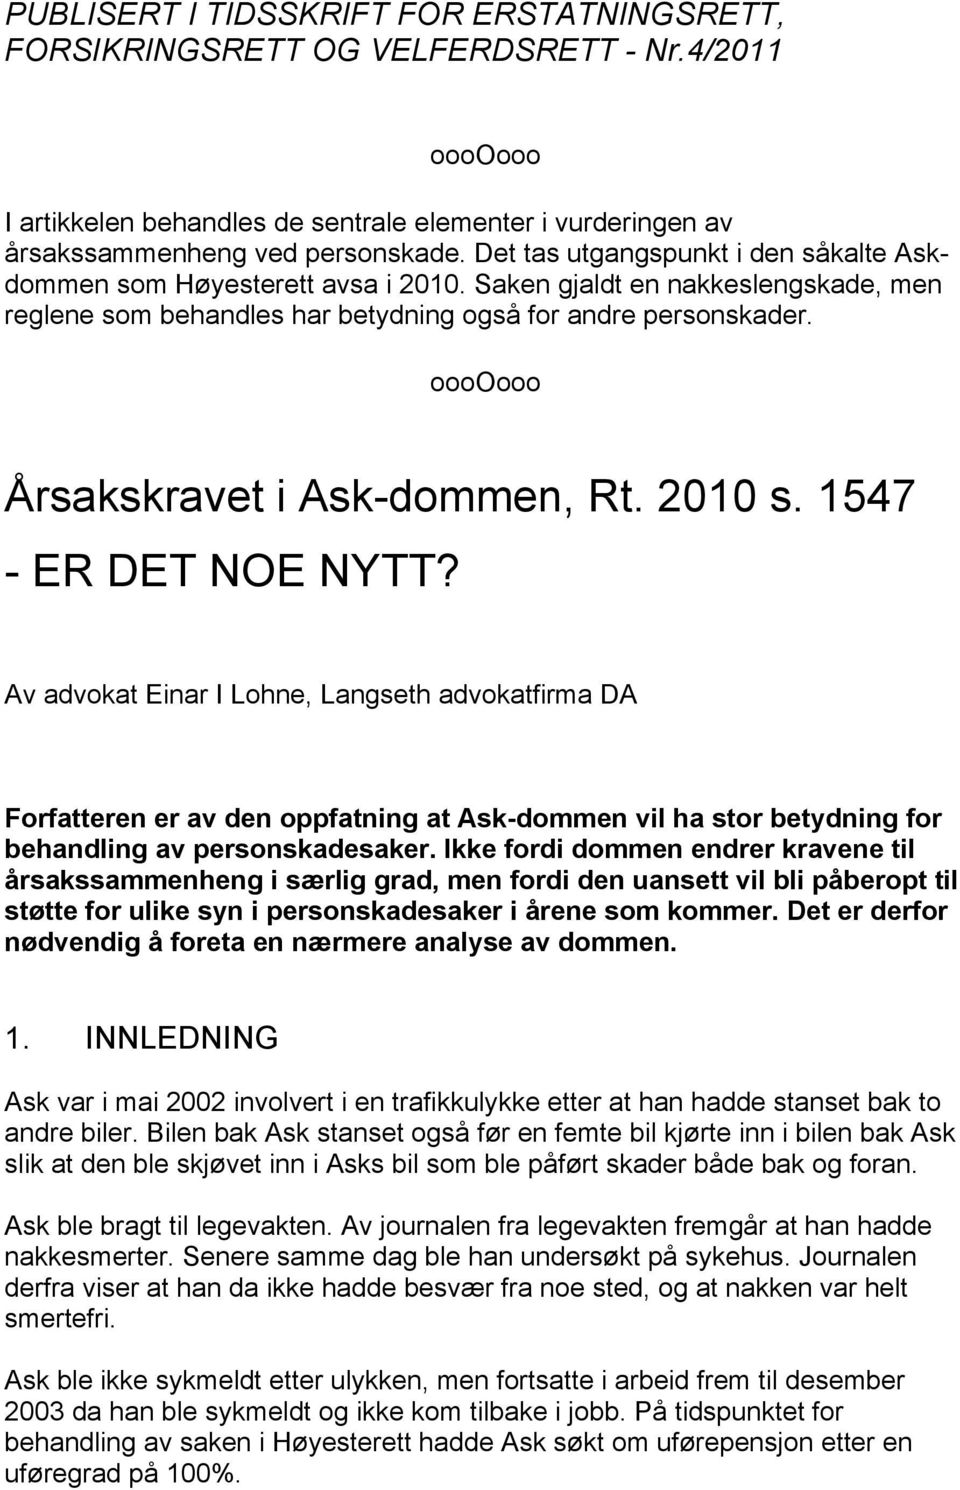 ooooooo Årsakskravet i Ask-dommen, Rt. 2010 s. 1547 - ER DET NOE NYTT?